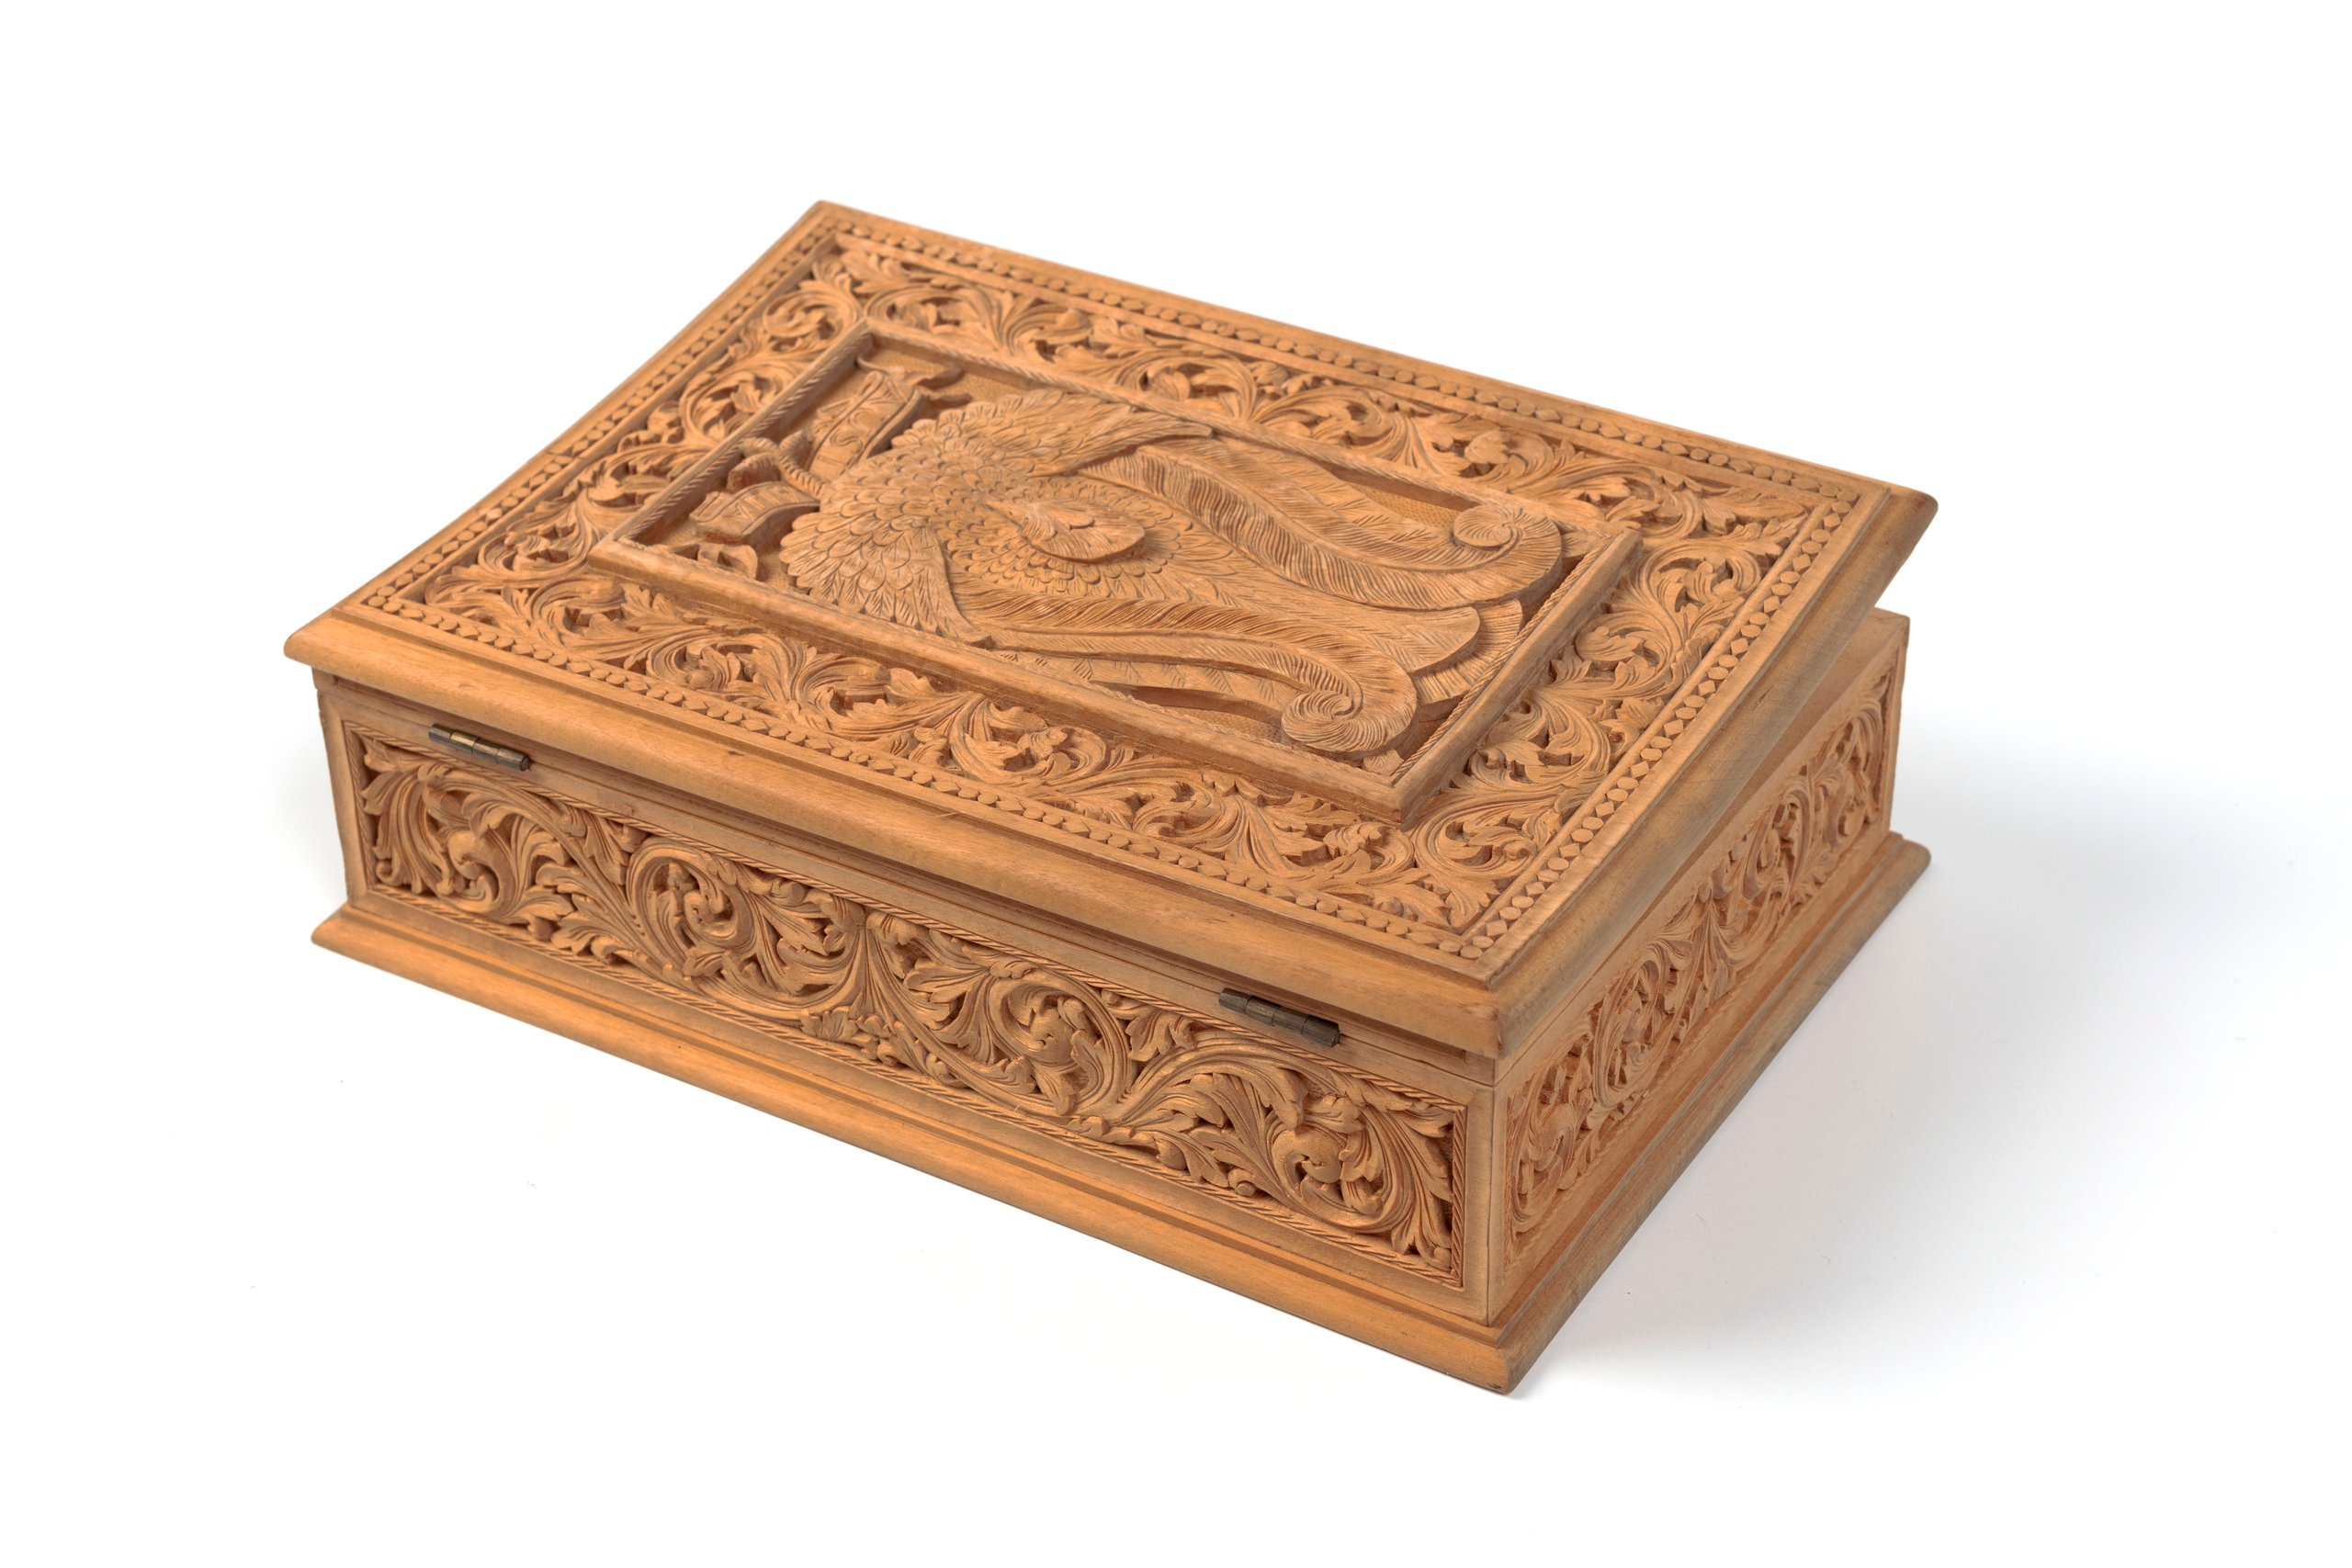 European beechwood box based on Lucien Henry design